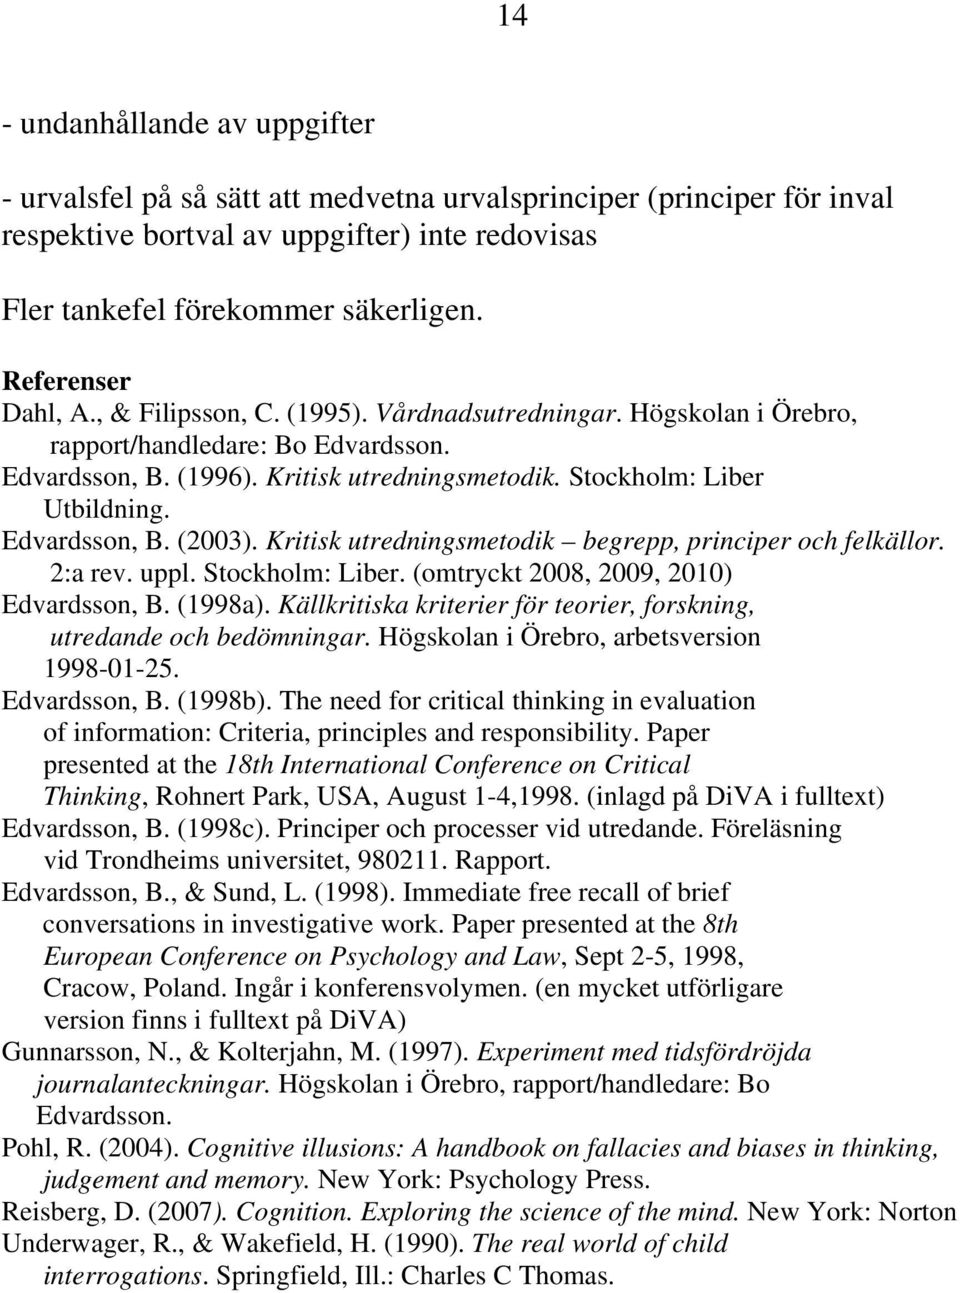 Edvardsson, B. (2003). Kritisk utredningsmetodik begrepp, principer och felkällor. 2:a rev. uppl. Stockholm: Liber. (omtryckt 2008, 2009, 2010) Edvardsson, B. (1998a).